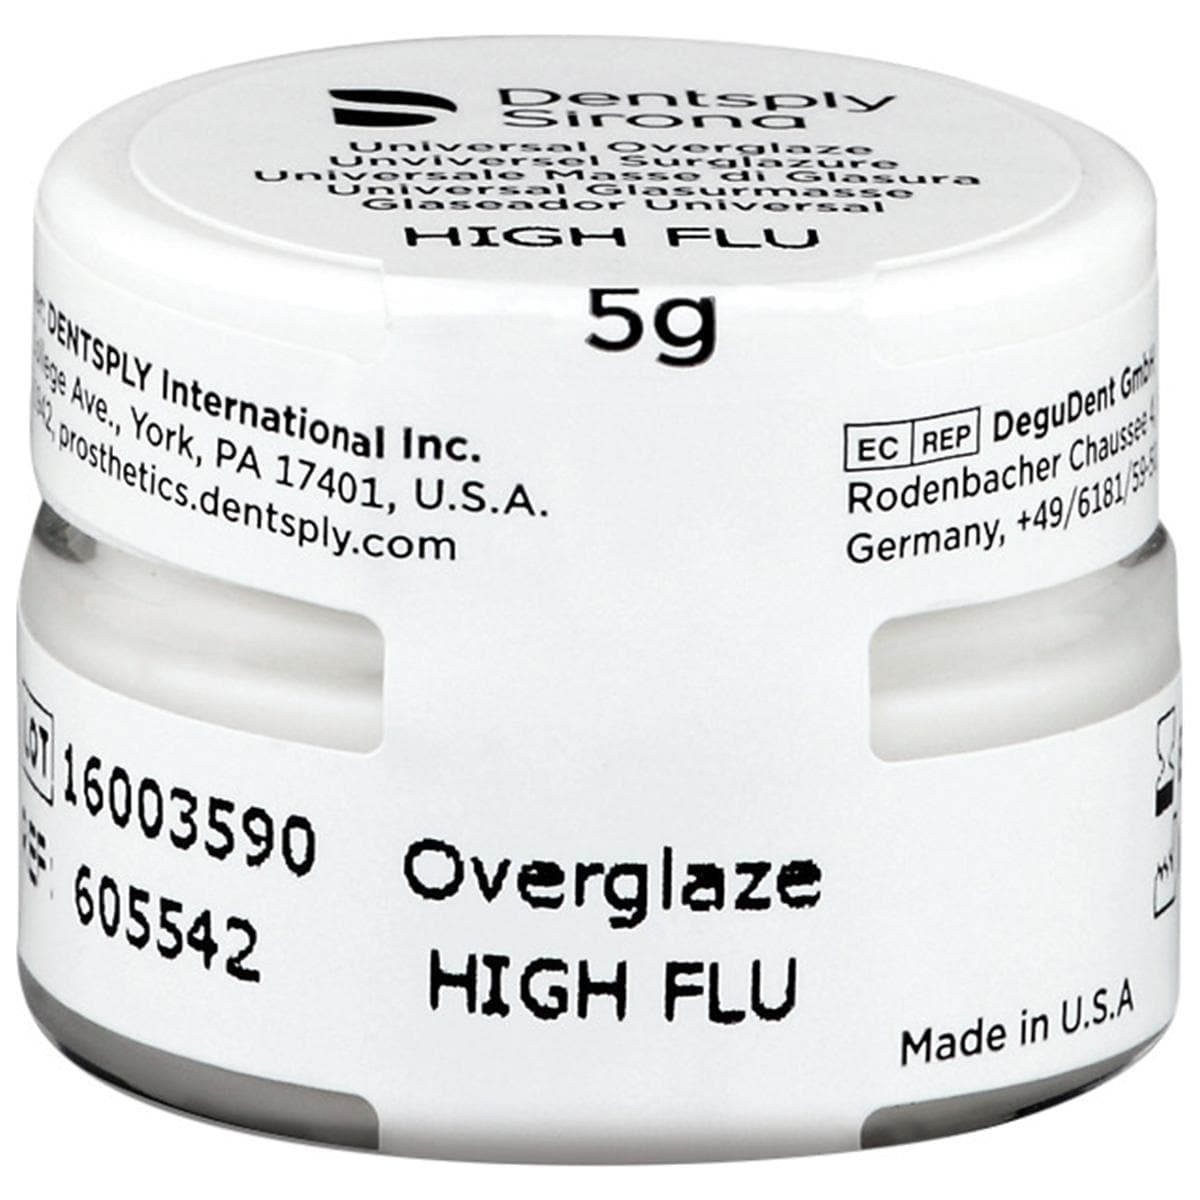 DS Universal Overglaze HIGH FLU - Packung 5 g